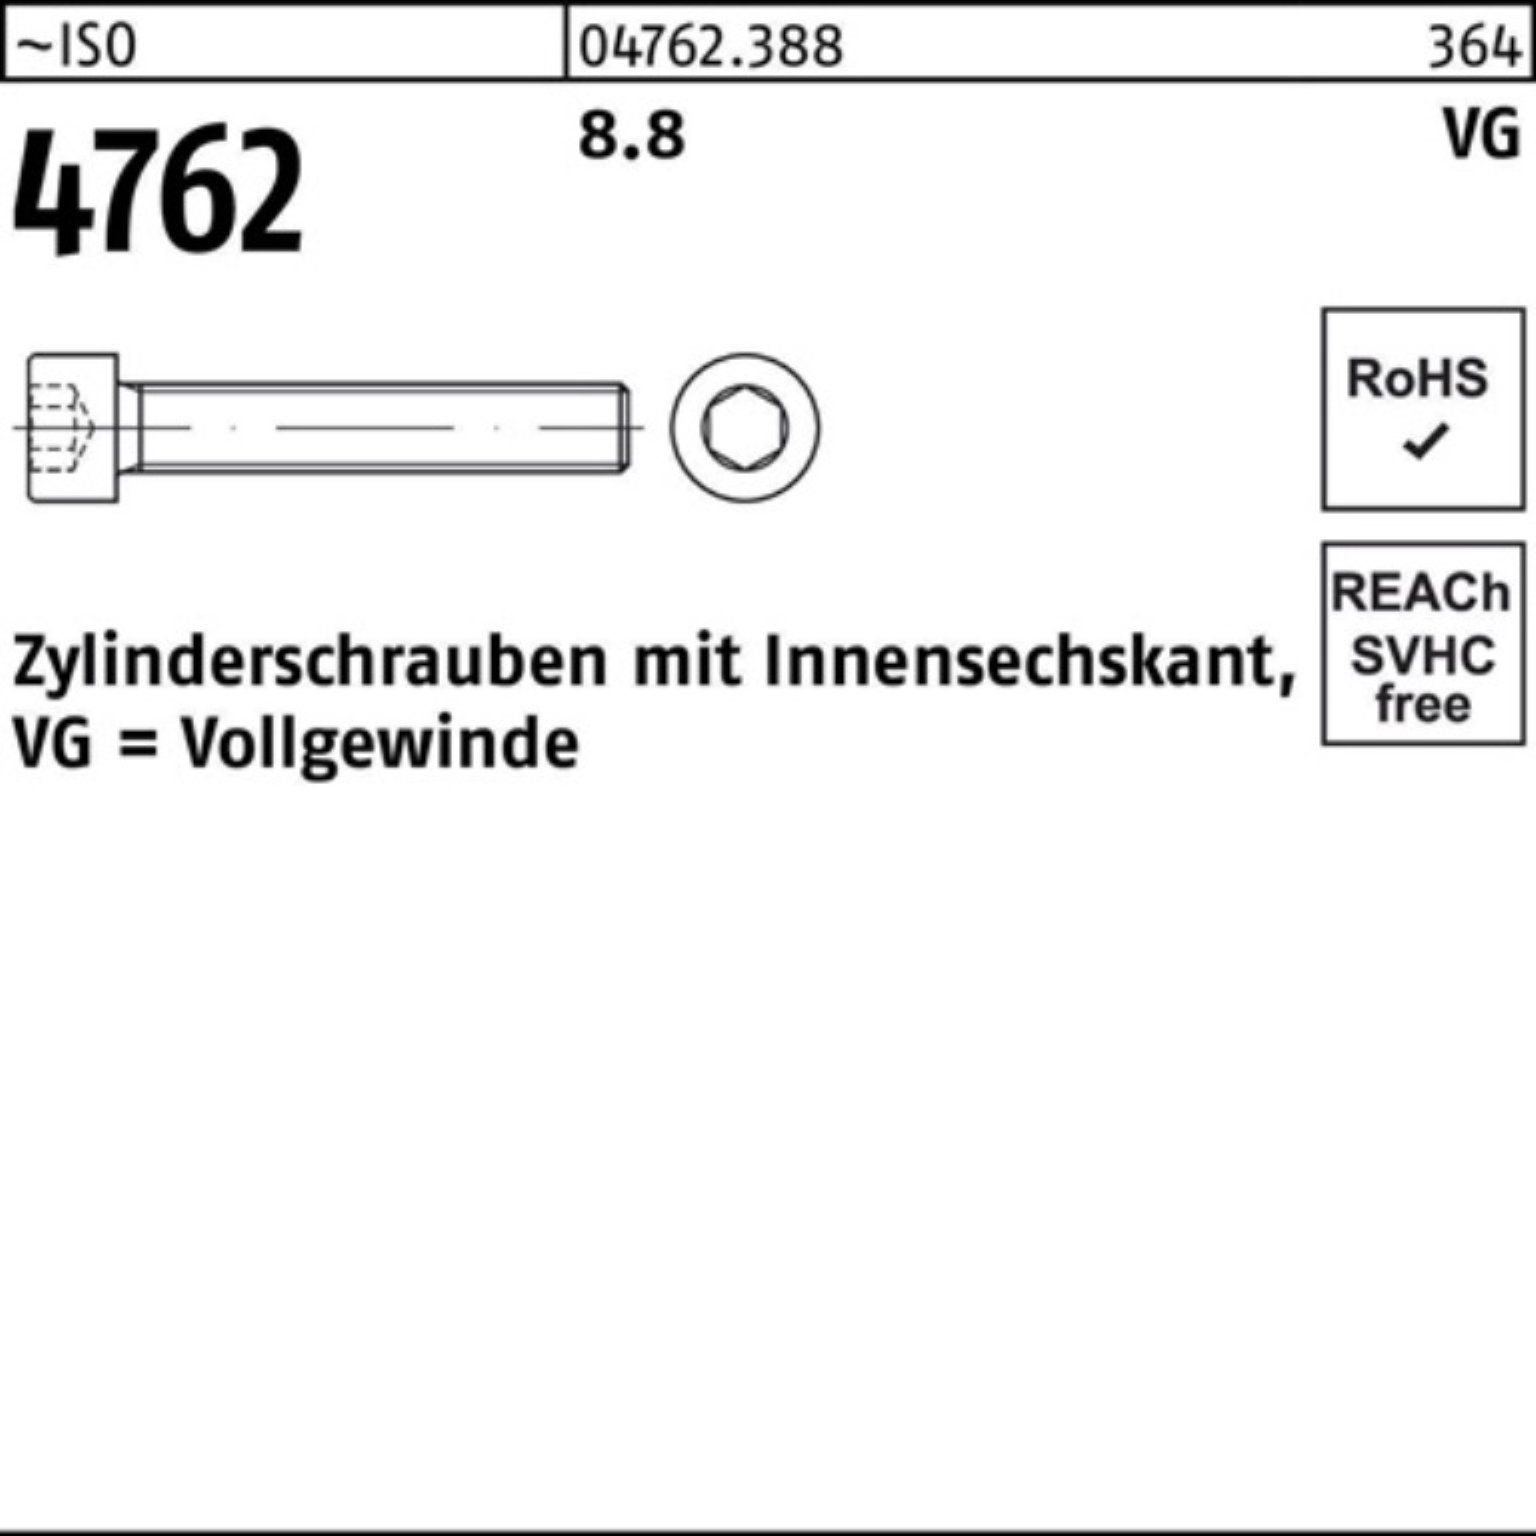 8.8 M8x Pack Zylinderschraube Reyher ISO 70 Stüc 4762 Innen-6kt 200 VG Zylinderschraube 200er